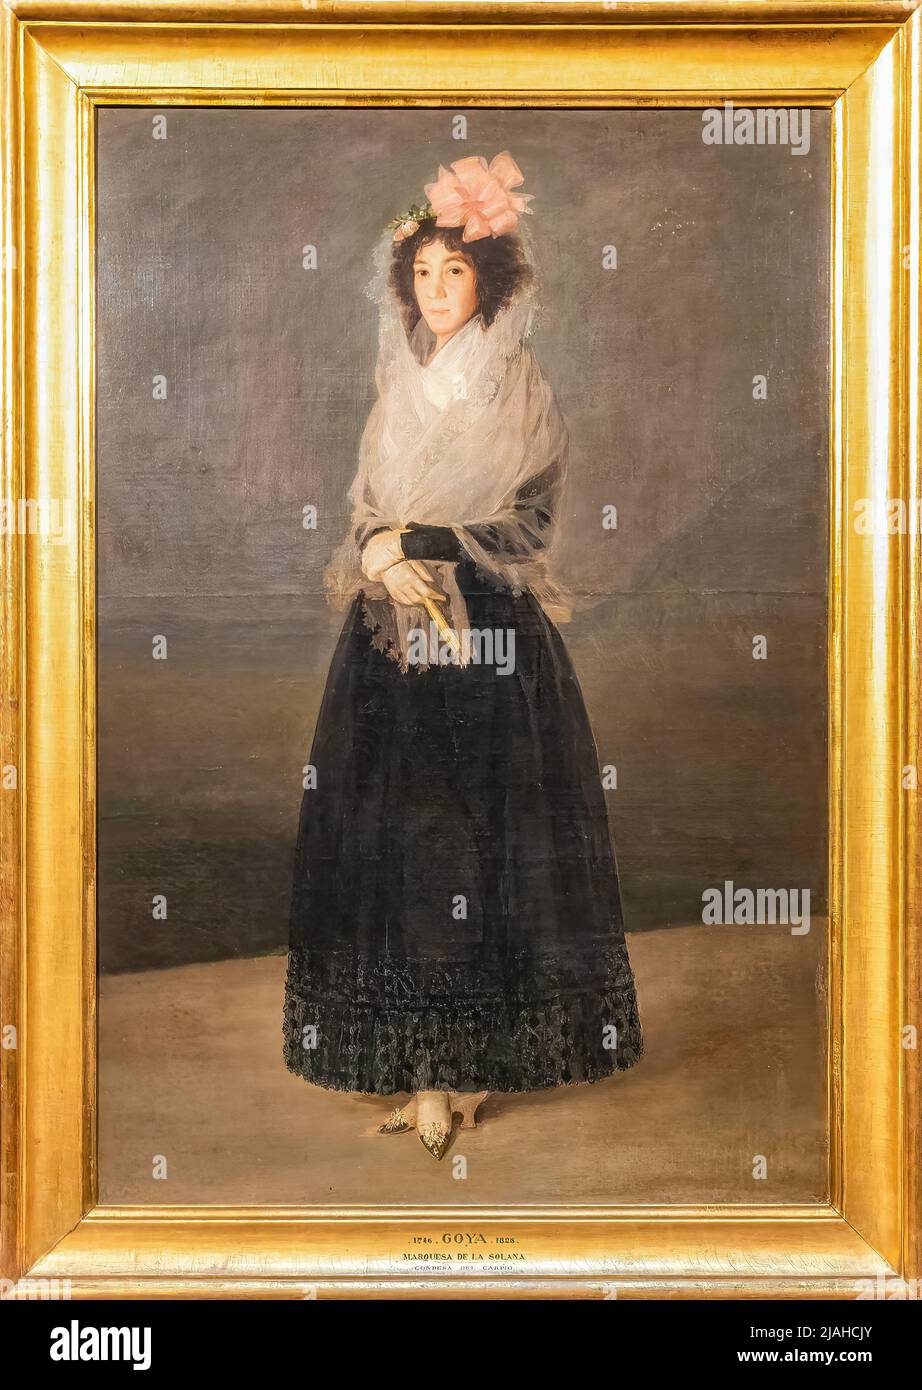 Parigi, Francia - 18 marzo 2018: Ritratto della contessa del Carpio, marchese dell'Solana, è un ritratto di Francisco de Goya y del 1795 Foto Stock